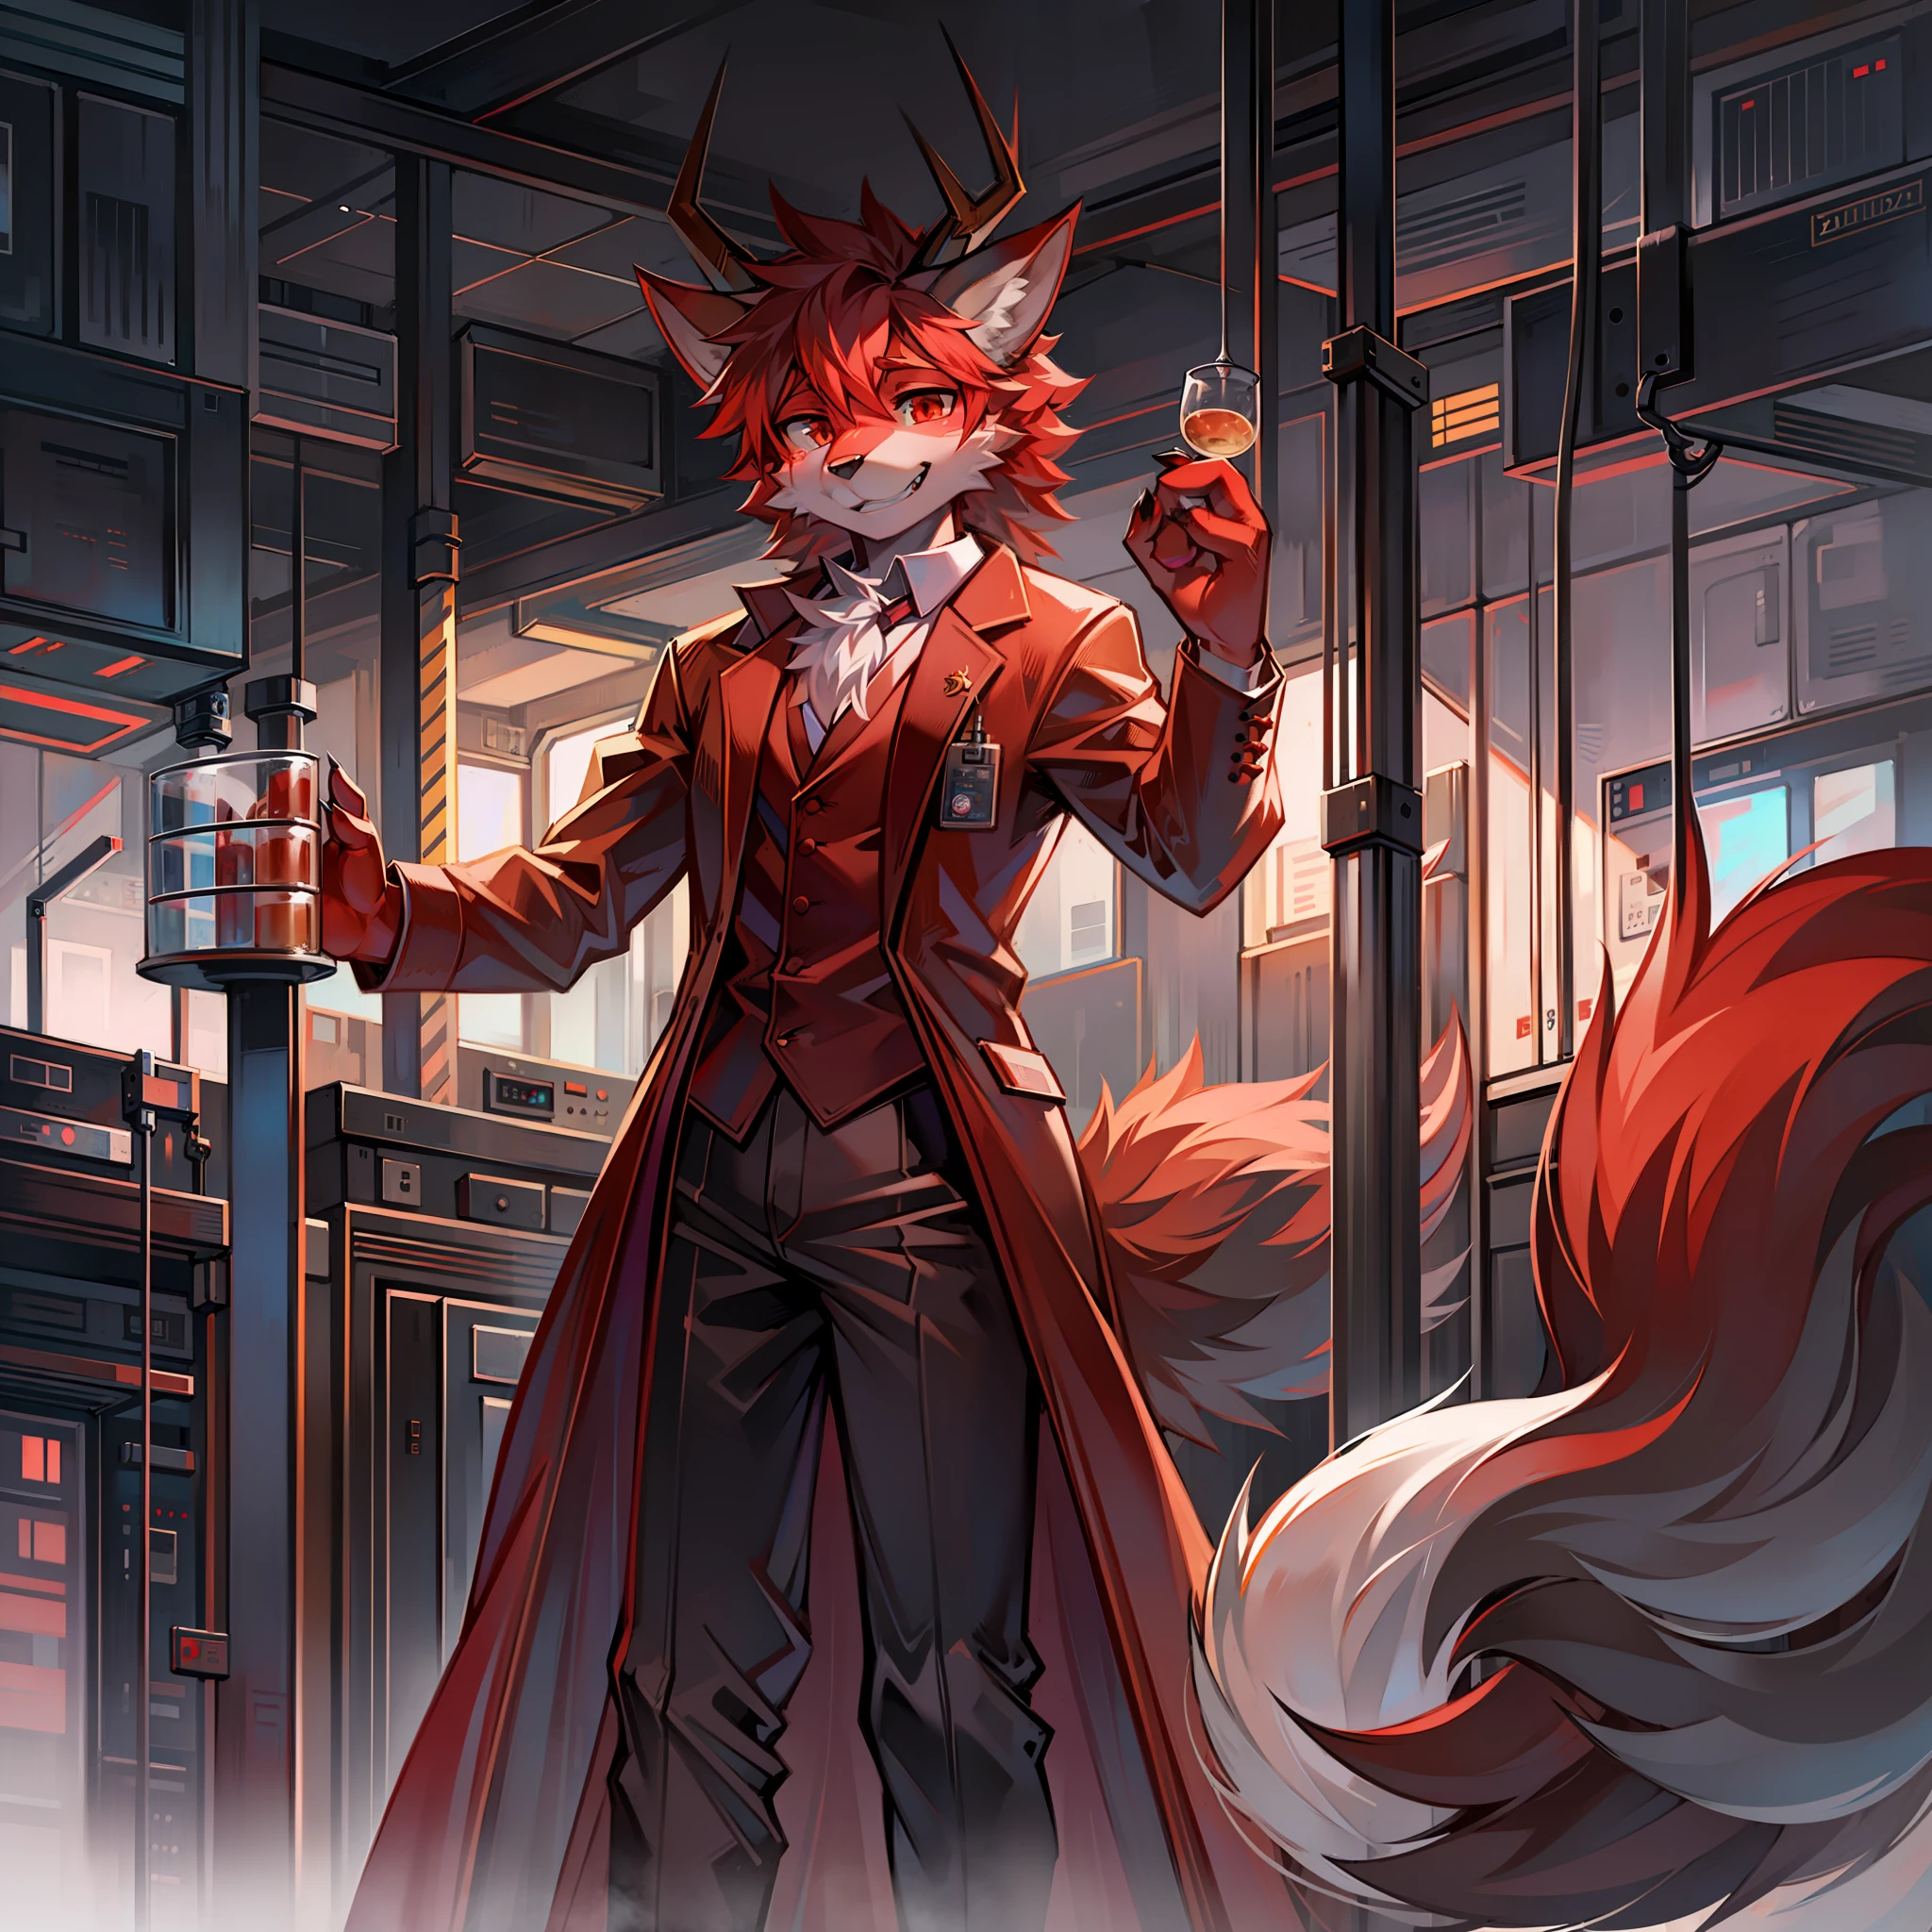 ذئب أحمر فروي يرتدي زي عالم في المختبر مع 4 قرون تنين.